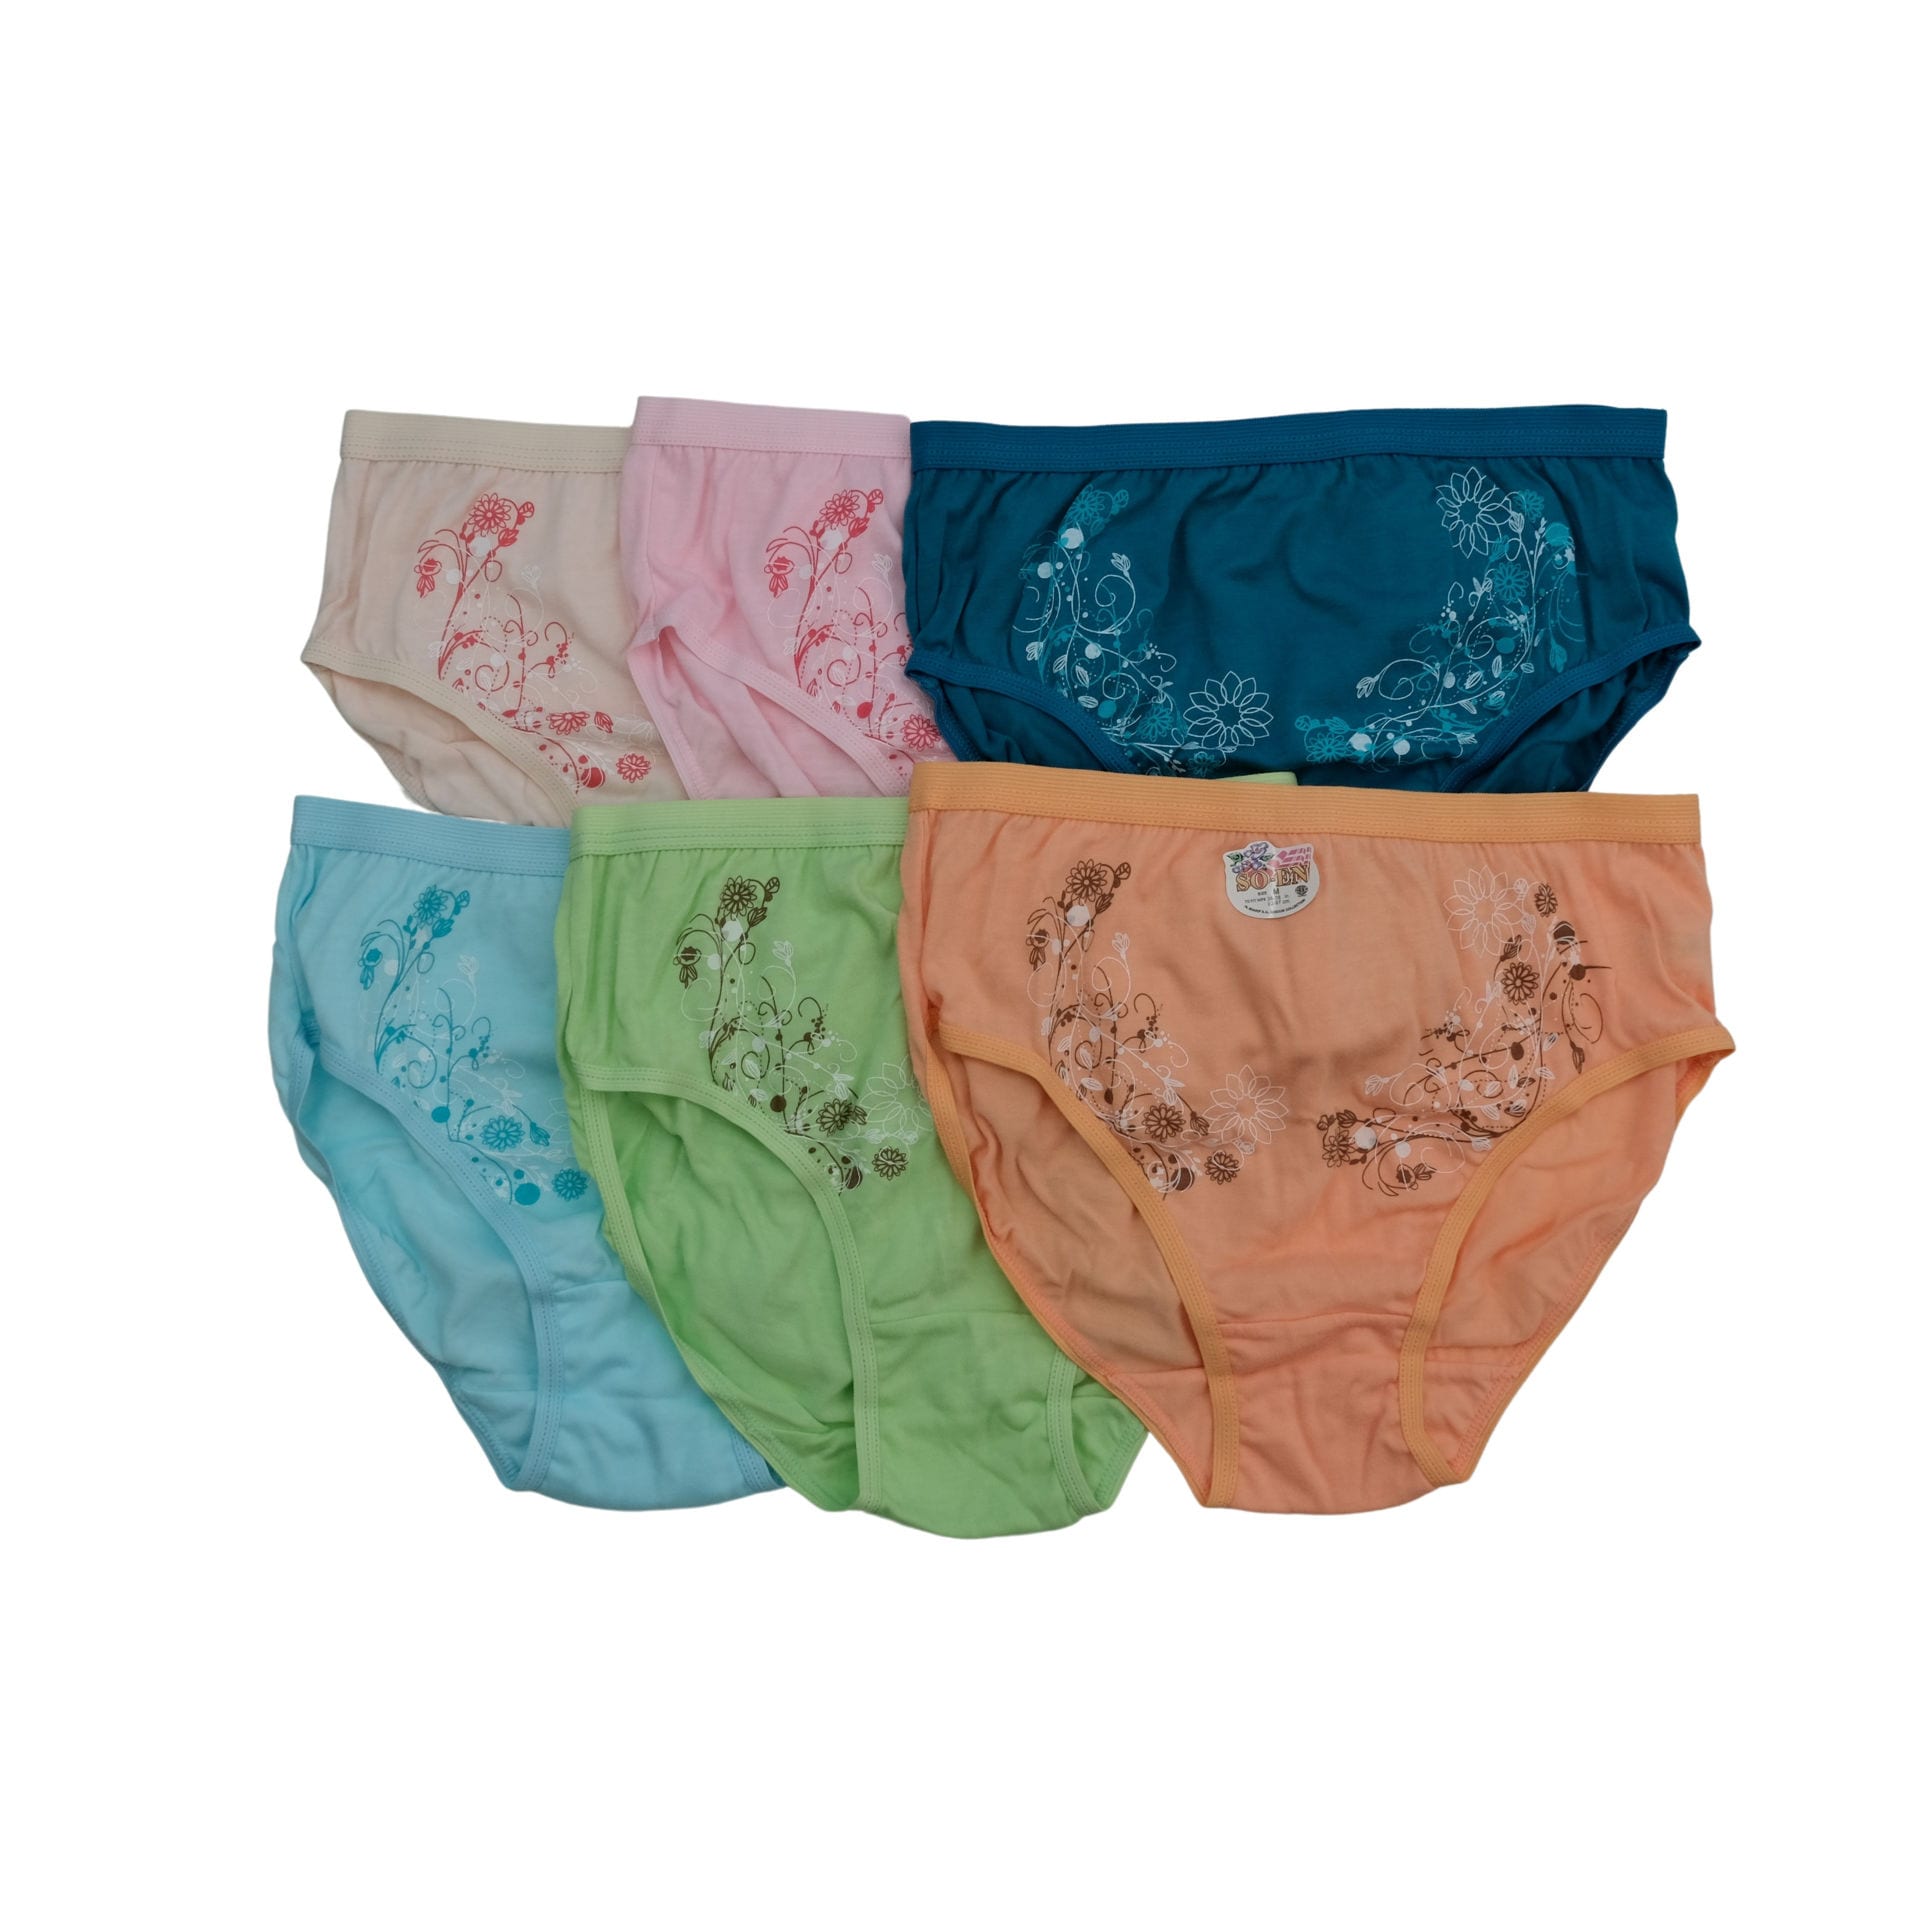 SO-EN Women 6 Pack Panties: Buy Online at Best Price in UAE